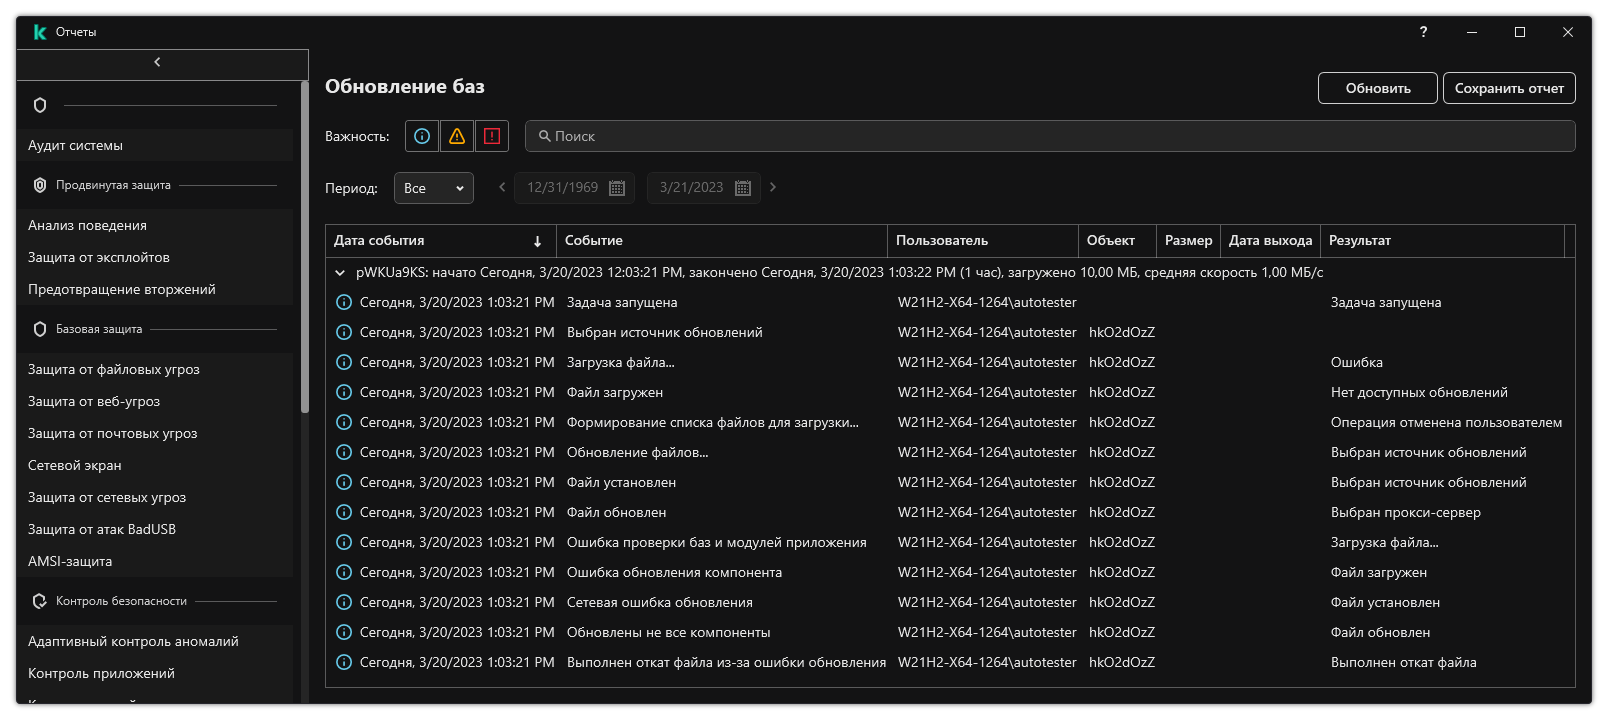 Окно со списком событий в отчете. Пользователь может фильтровать / сортировать события, а также сохранить отчеты в файл.